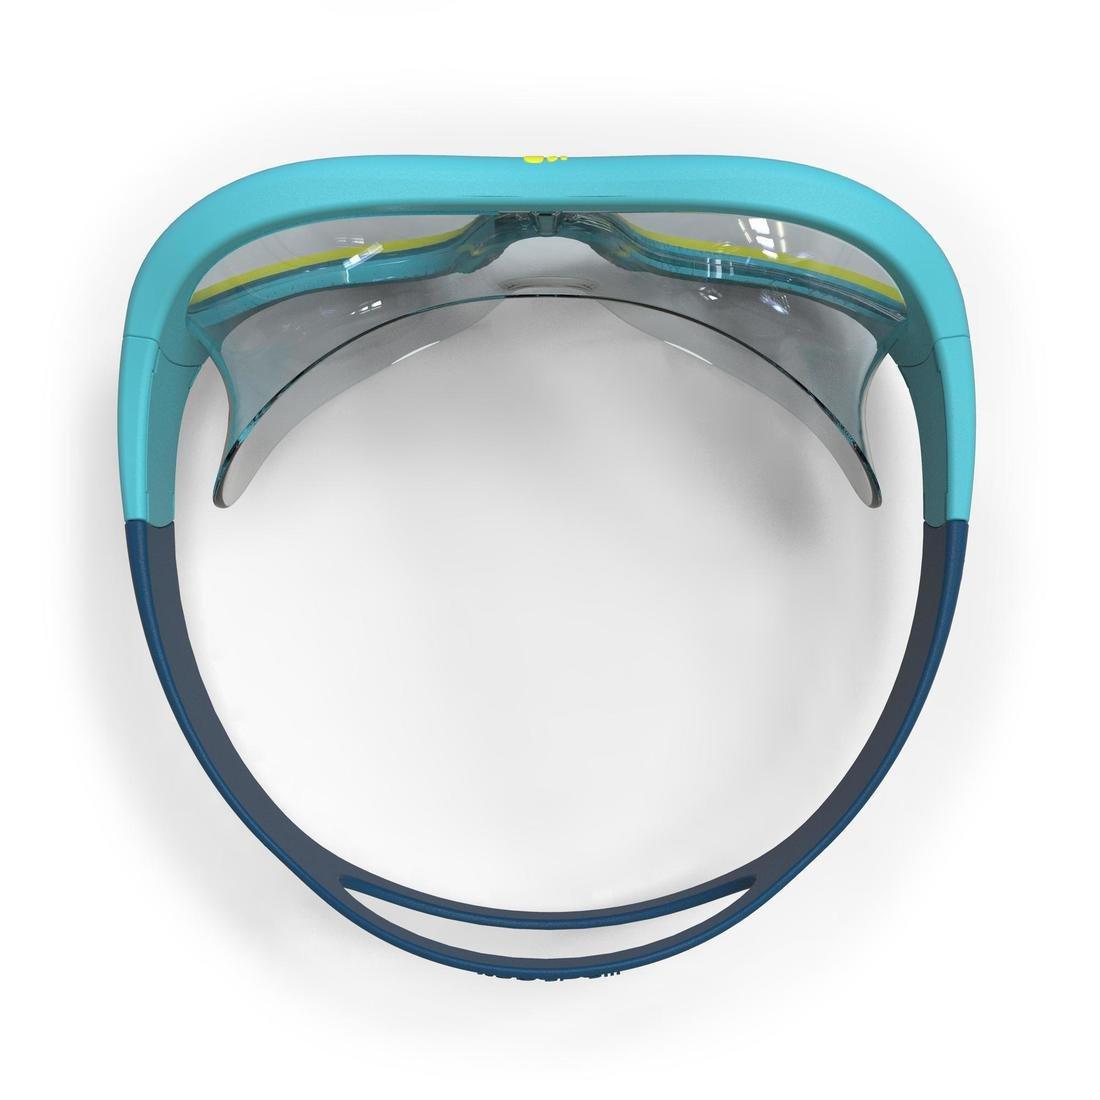 NABAIJI - 100 Swimdow Swimming Mask, Blue